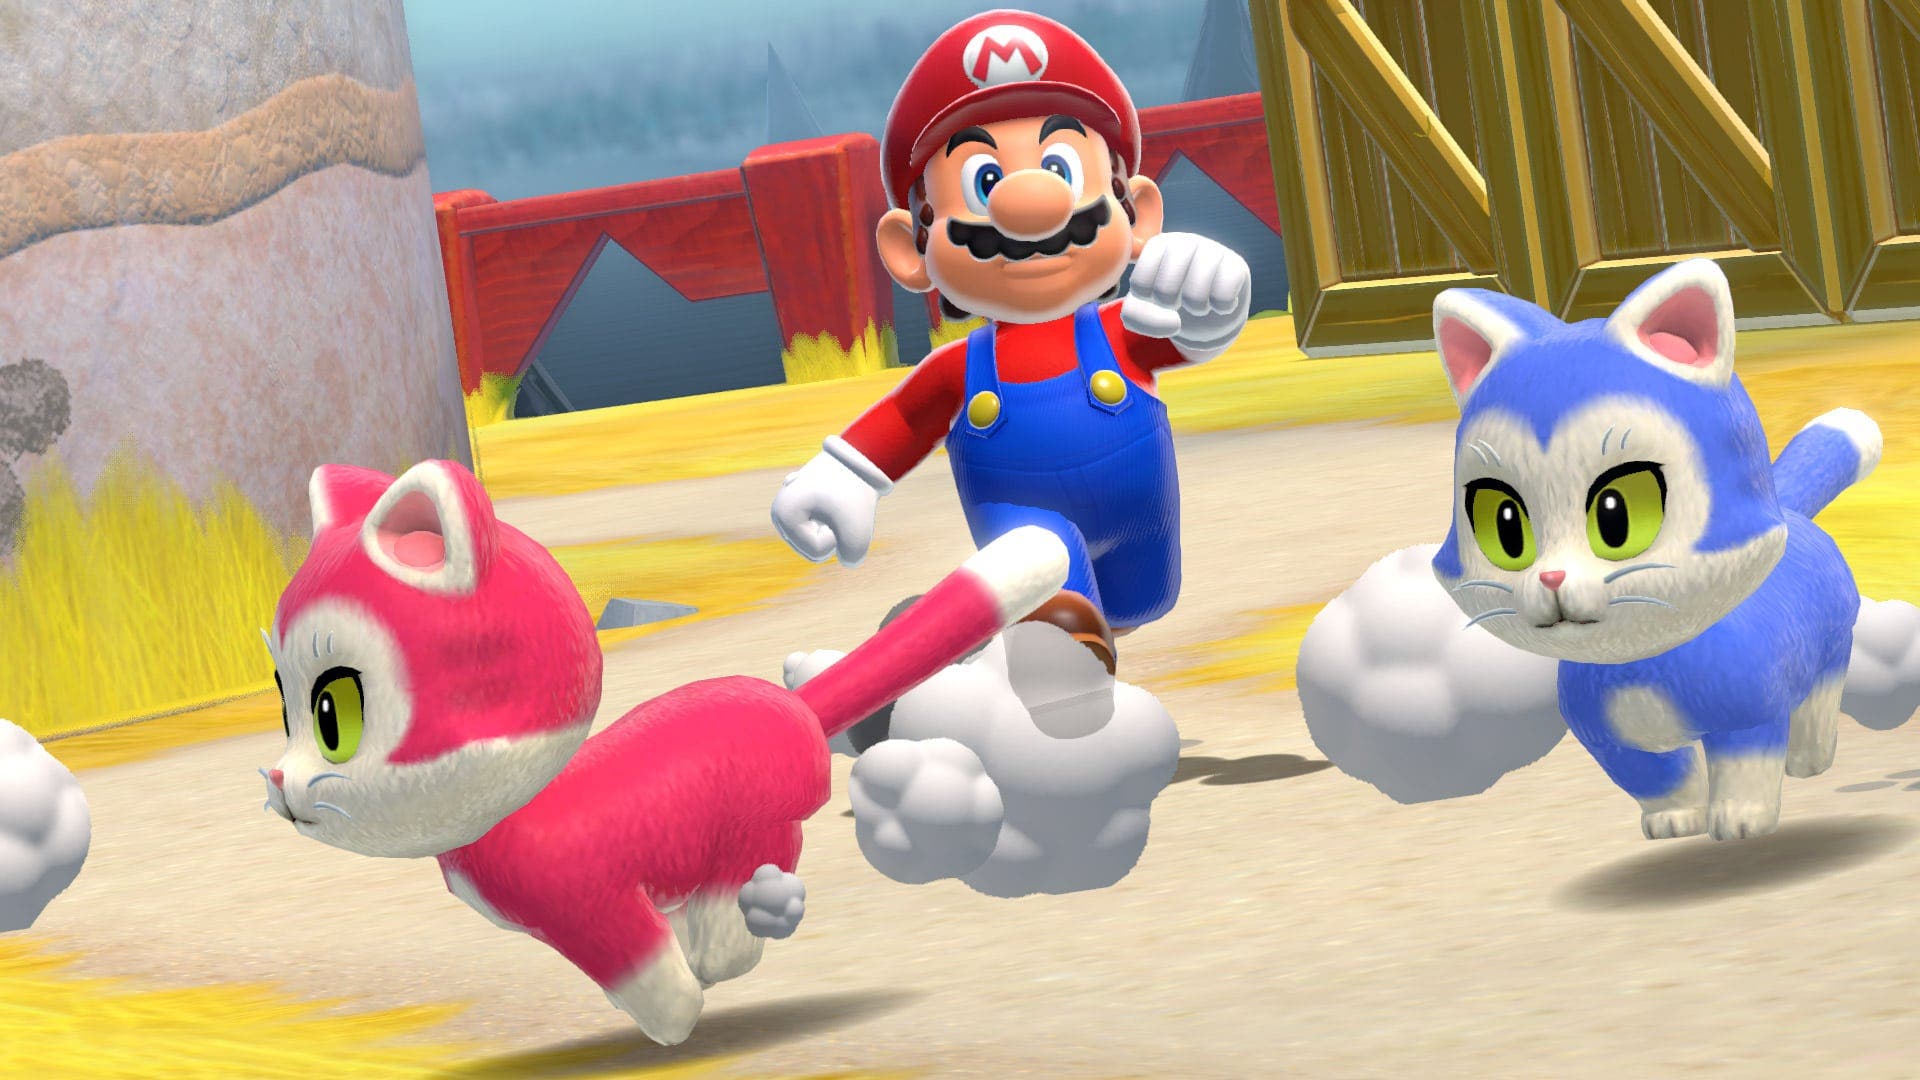 Vídeo: 10 detalles que puedes haber pasado por alto en Bowser’s Fury de Super Mario 3D World + Bowser’s Fury